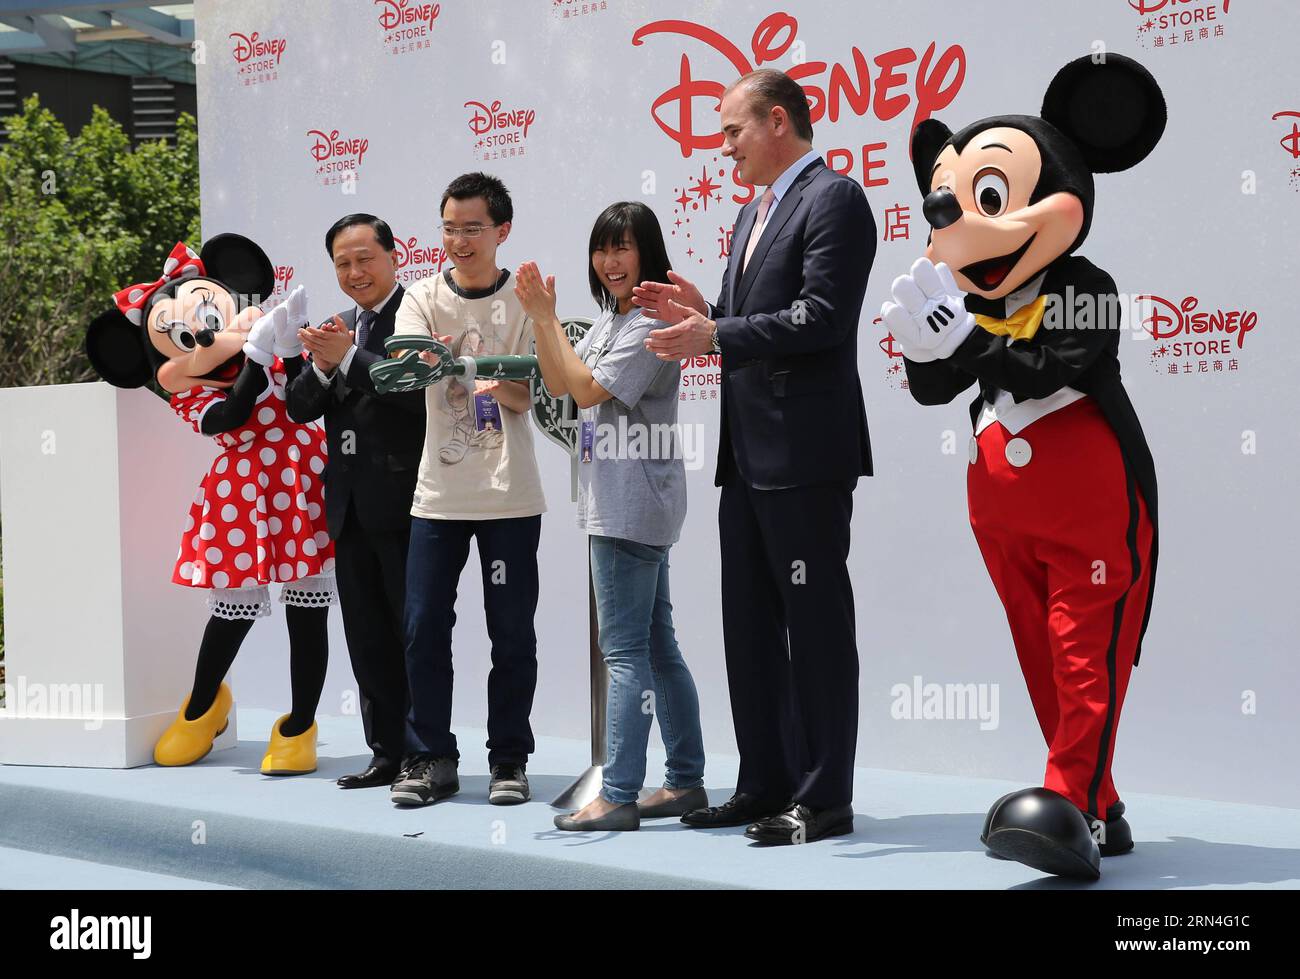 (150520) -- SHANGHAI, 20. Mai 2015 -- Disney-Charaktere Mickey und Minnie Maus mit Gästen nehmen an der Eröffnungszeremonie für den Disney Flagship Store in Shanghai, Ostchina, 20. Mai 2015 Teil. Das Geschäft, das eine Fläche von 5.860 Quadratmetern im Geschäftsviertel Lujiazui einnimmt, wurde am Mittwoch eröffnet. PEI Xin) (wyo) CHINA-SHANGHAI-DISNEY STORE-OPEN (CN) DingxTing PUBLICATIONxNOTxINxCHN 150520 Shanghai 20. Mai 2015 Disney-Charaktere Mickey und Minnie Mouse mit Gästen nehmen an der Eröffnungszeremonie für den Disney Flagship Store in Shanghai Ostchina 20. Mai 2015 Teil der Store belegt eine Fläche von 5 860 Stockfoto